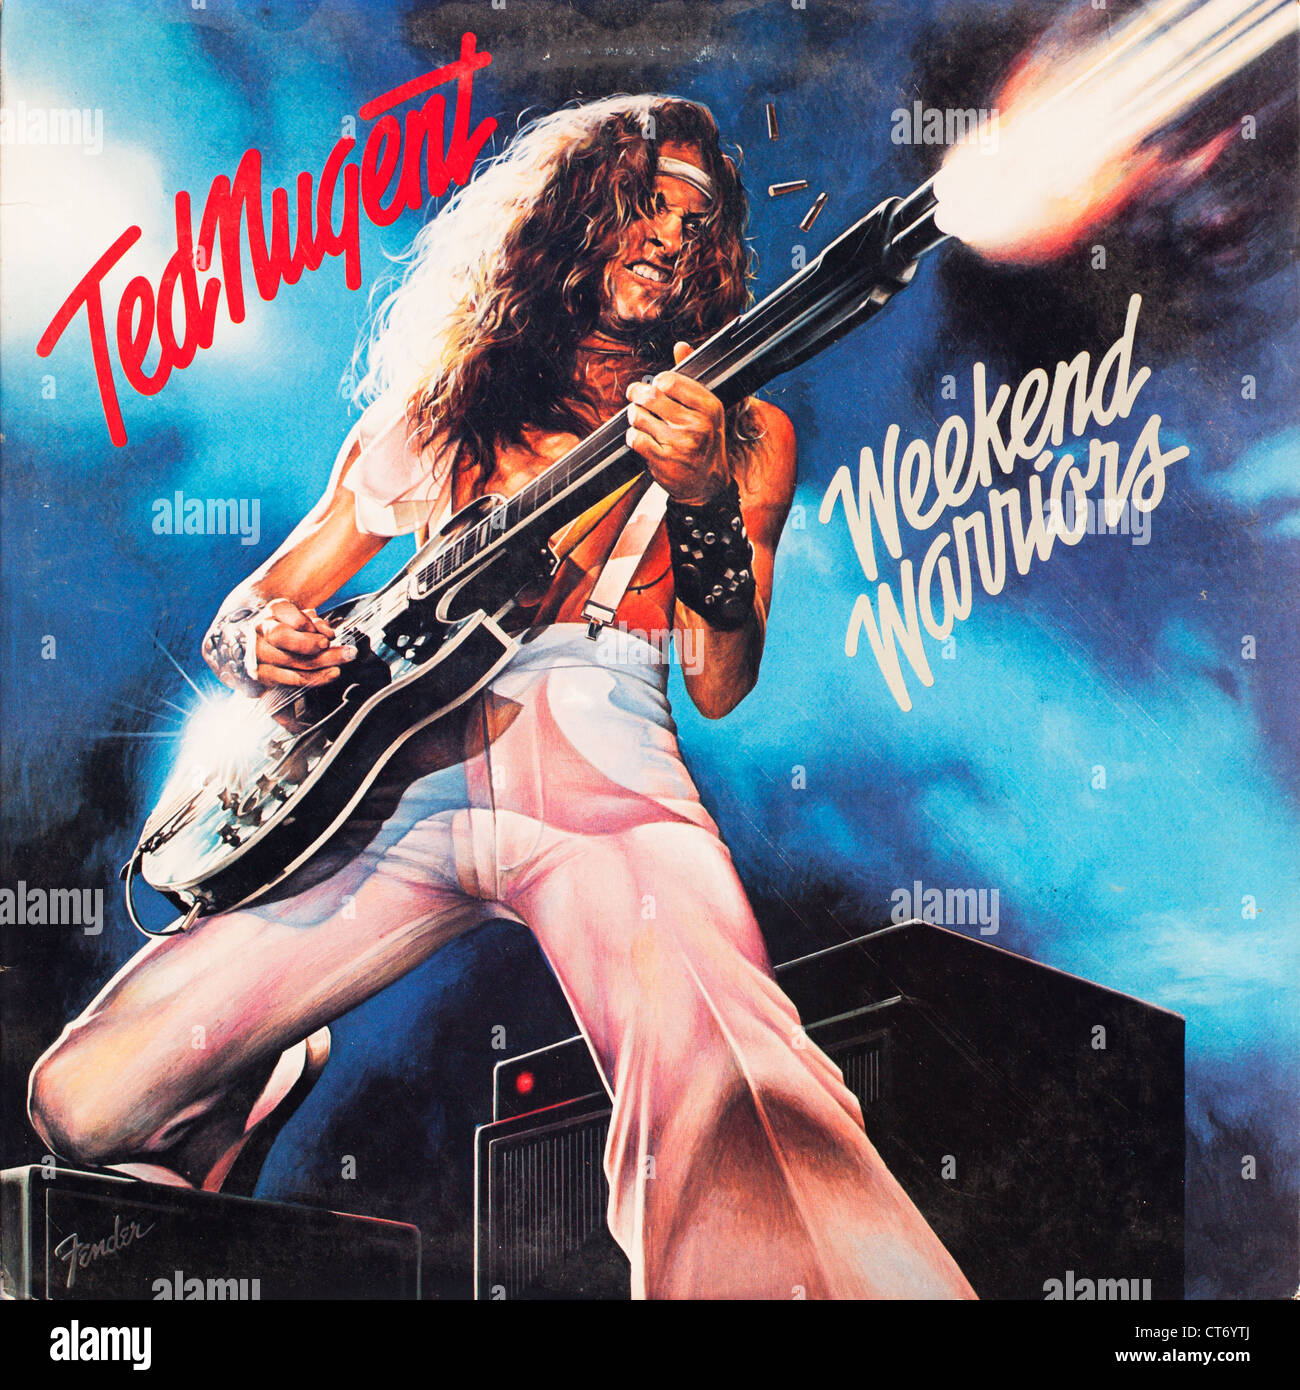 Wochenend-Krieger Vinyl Record Album-Cover aus dem amerikanischen Gitarristen Ted Nugent. Nur zur redaktionellen Verwendung. Kommerzielle Nutzung verboten Stockfoto